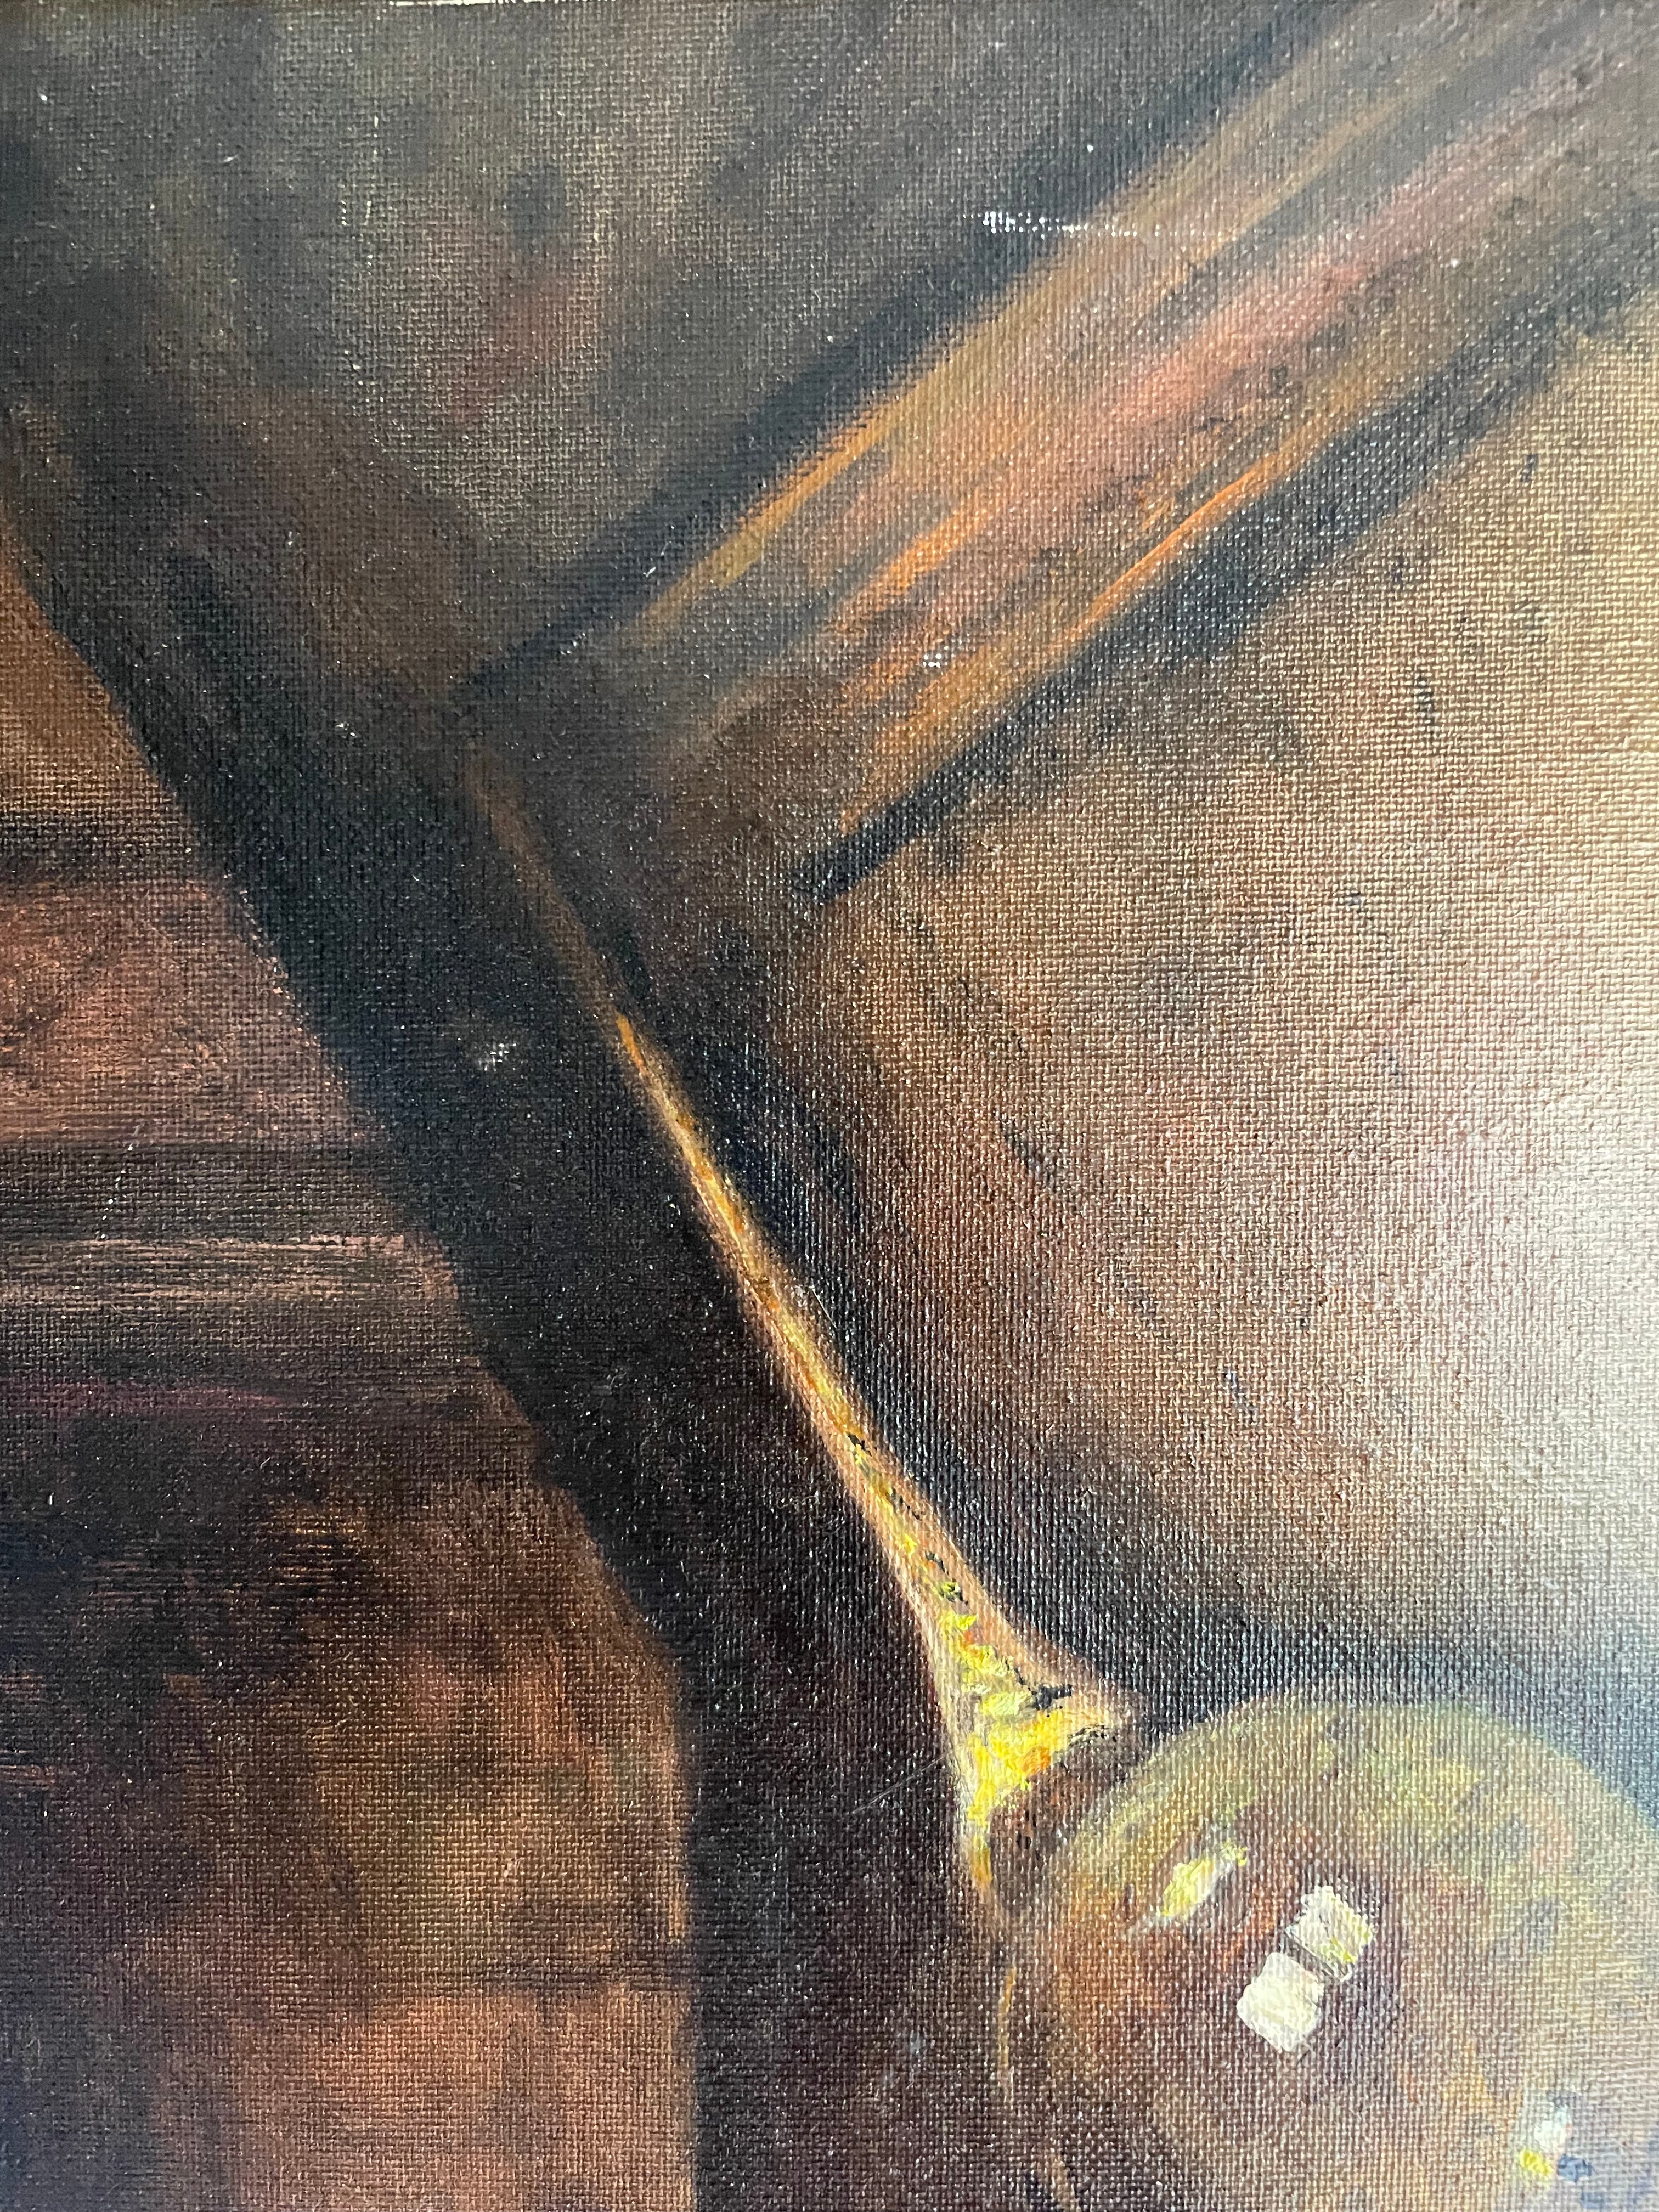 After Spritzweg “The Alchemist” - Oil on Canvas